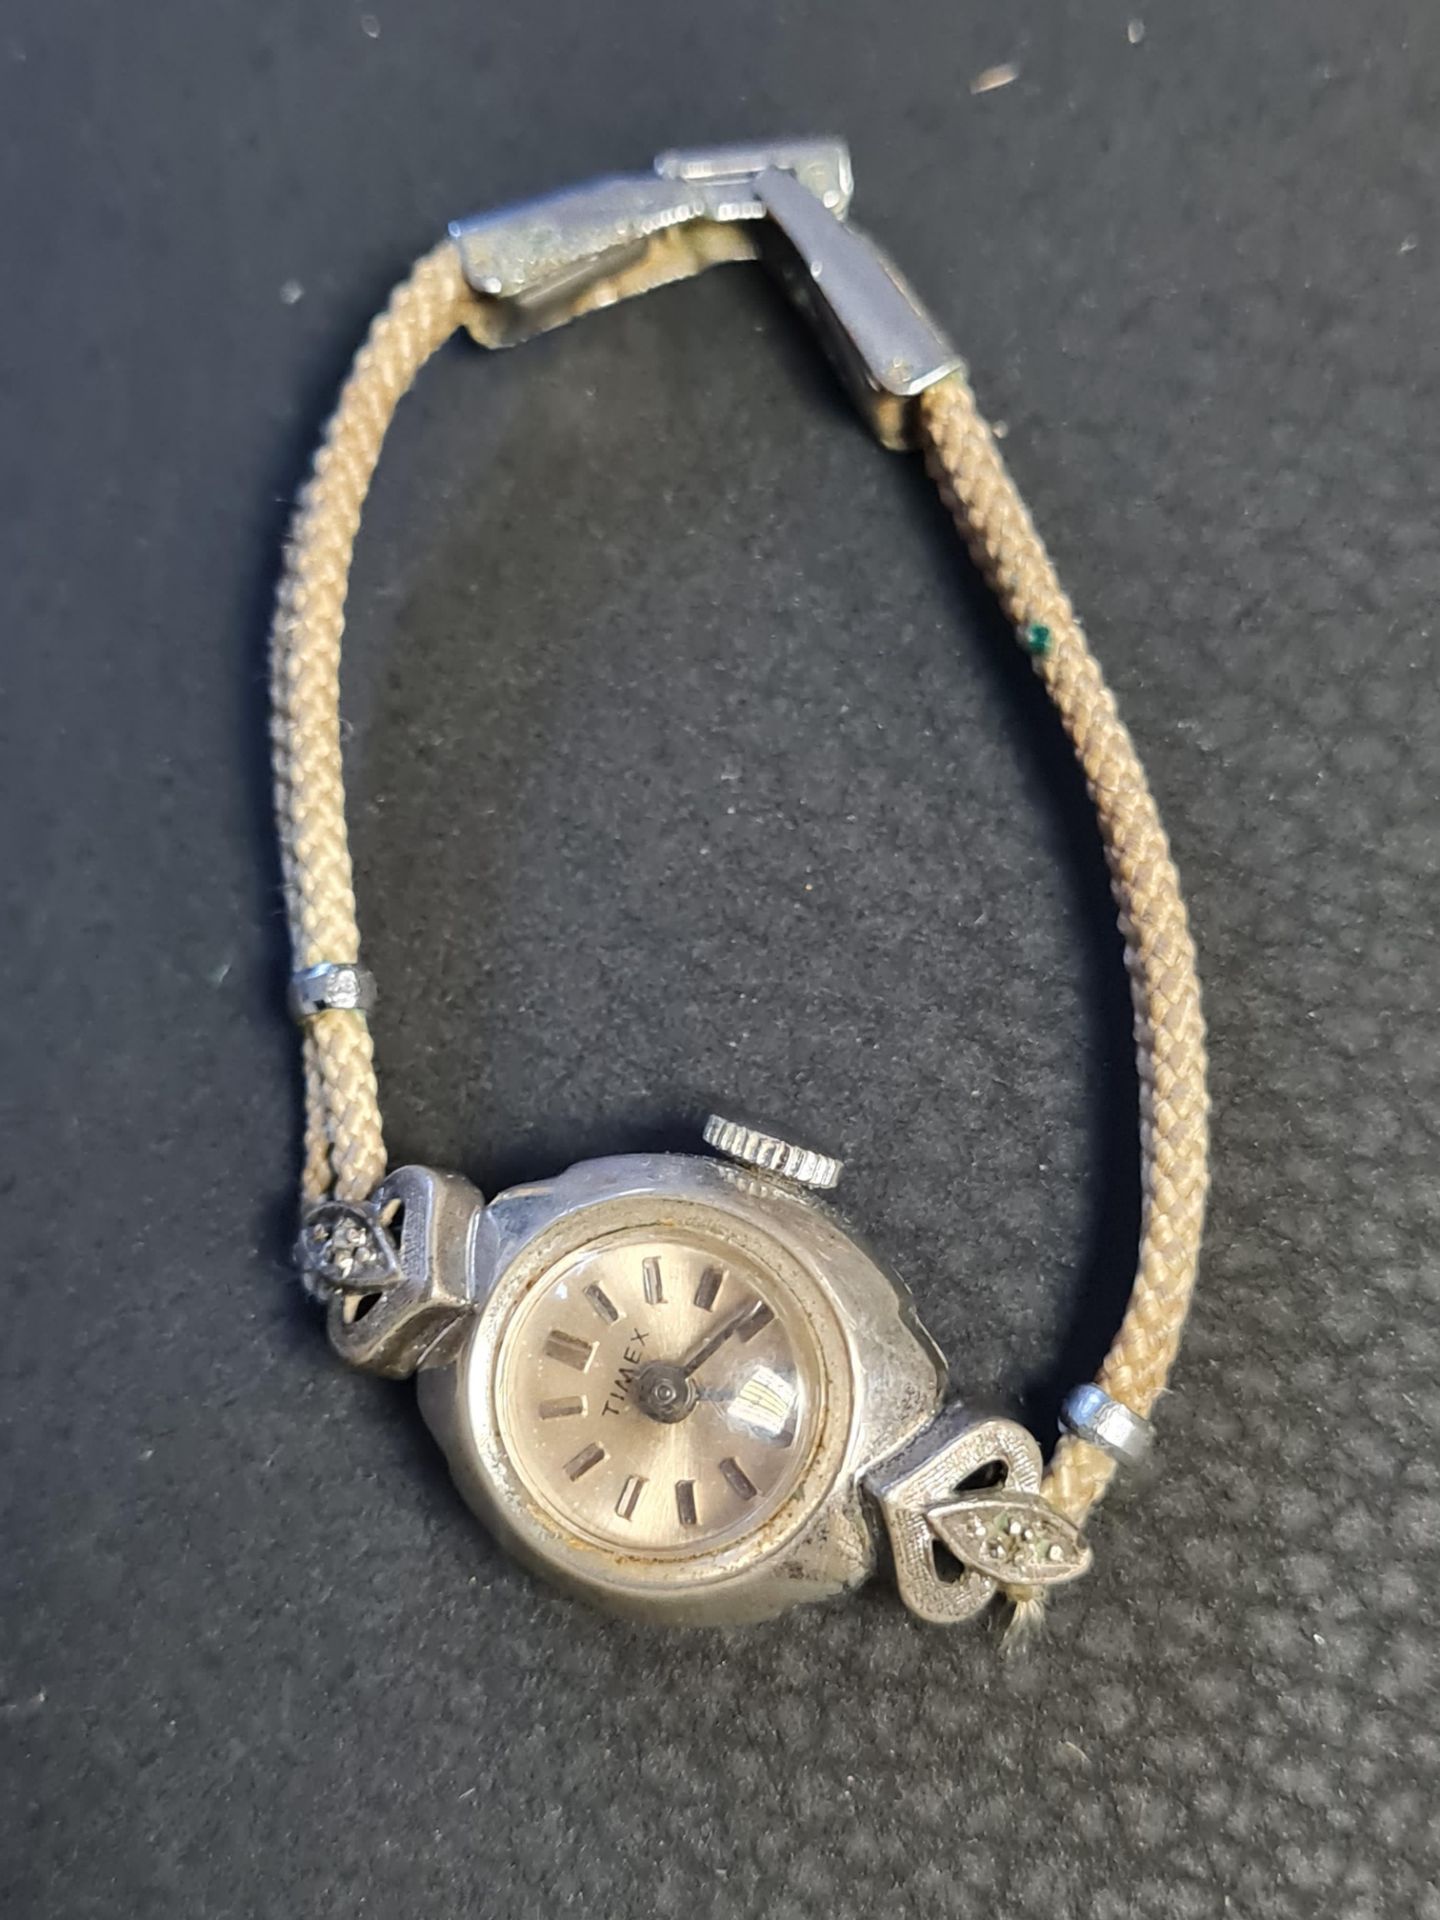 vintage 1950s timex watch working